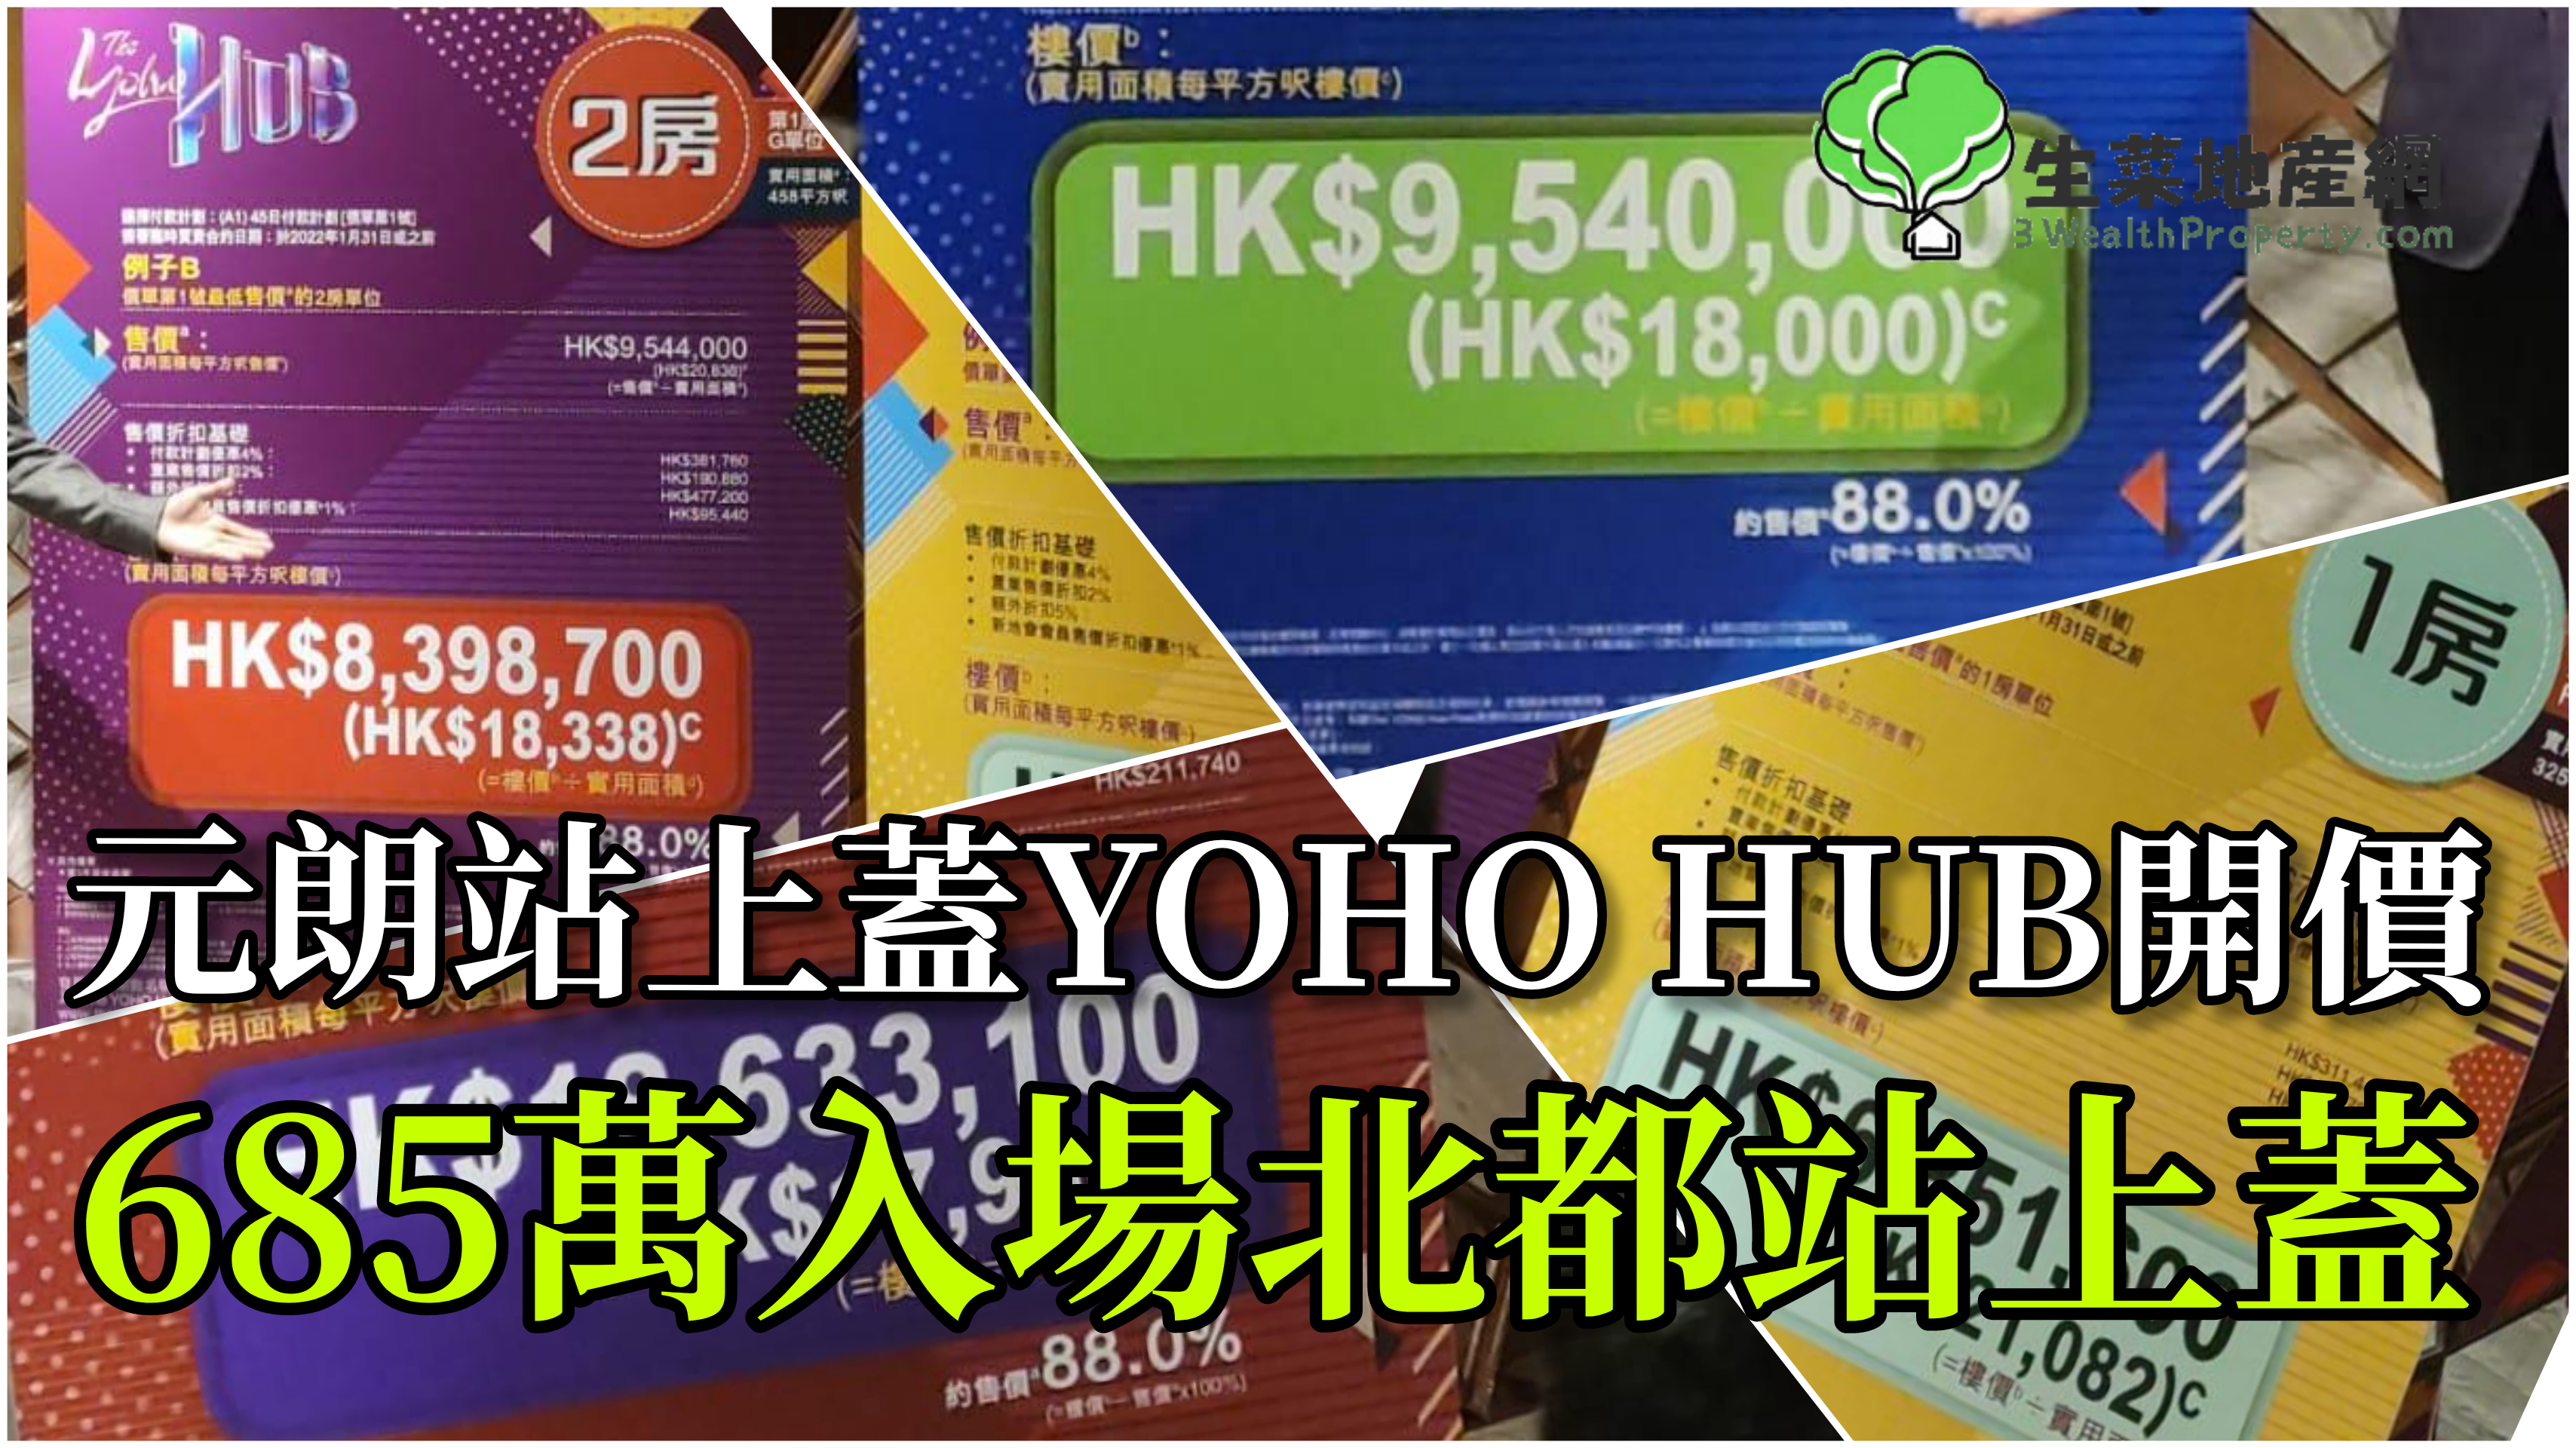 北都鐵路盤 The Yoho Hub 開價 最平約685萬